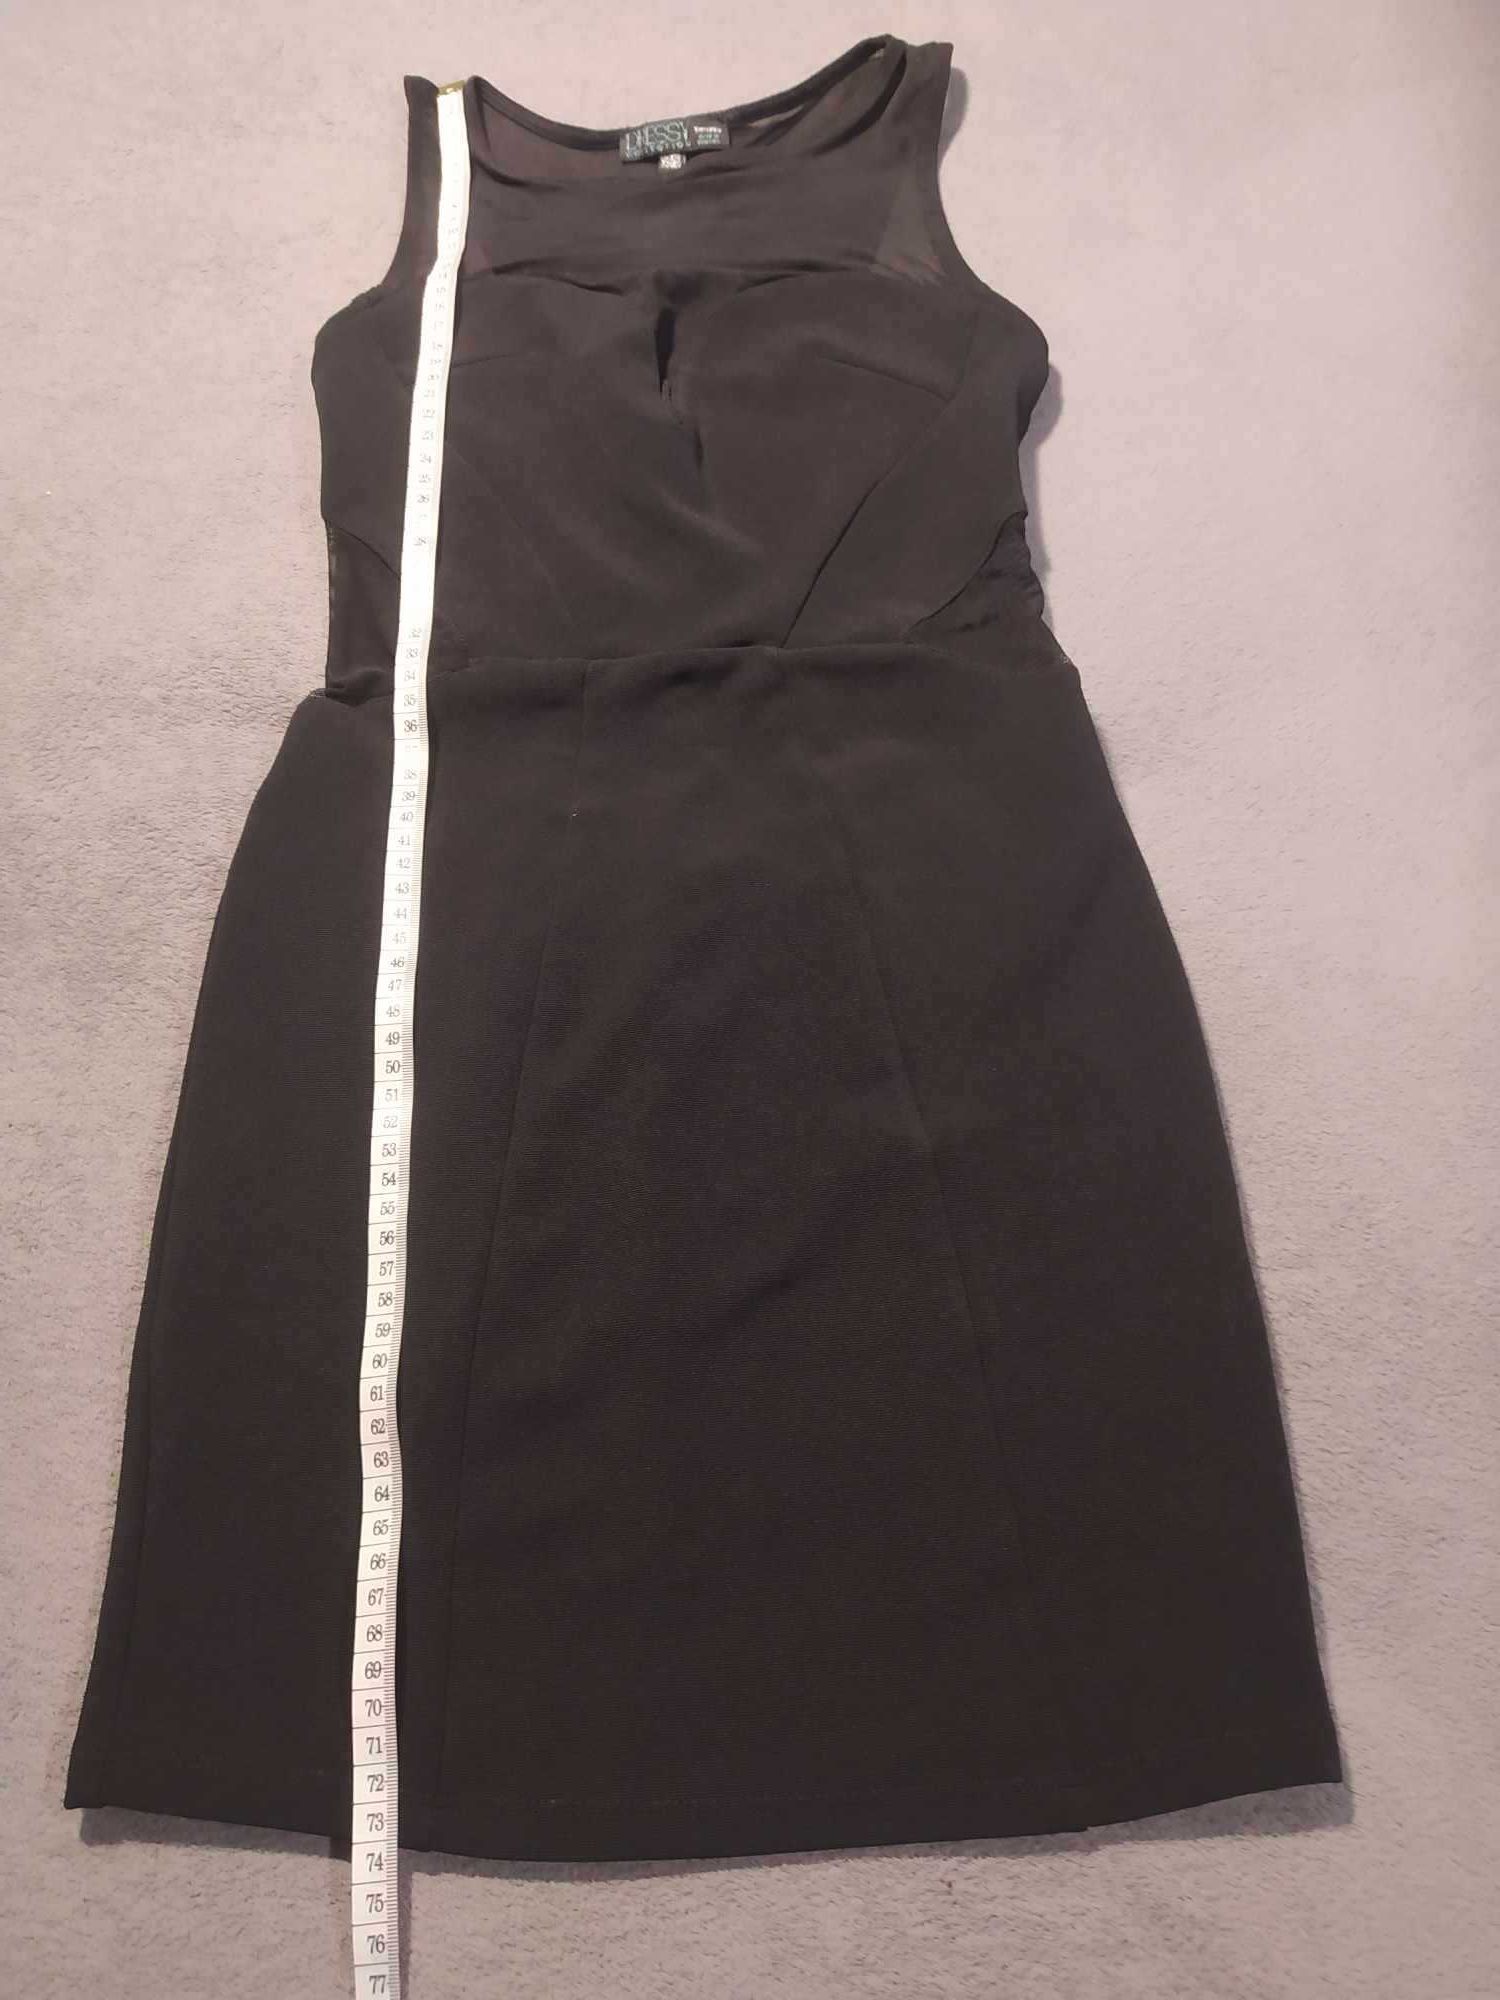 Czarna sukienka Bershka rozmiar XS  Impreza